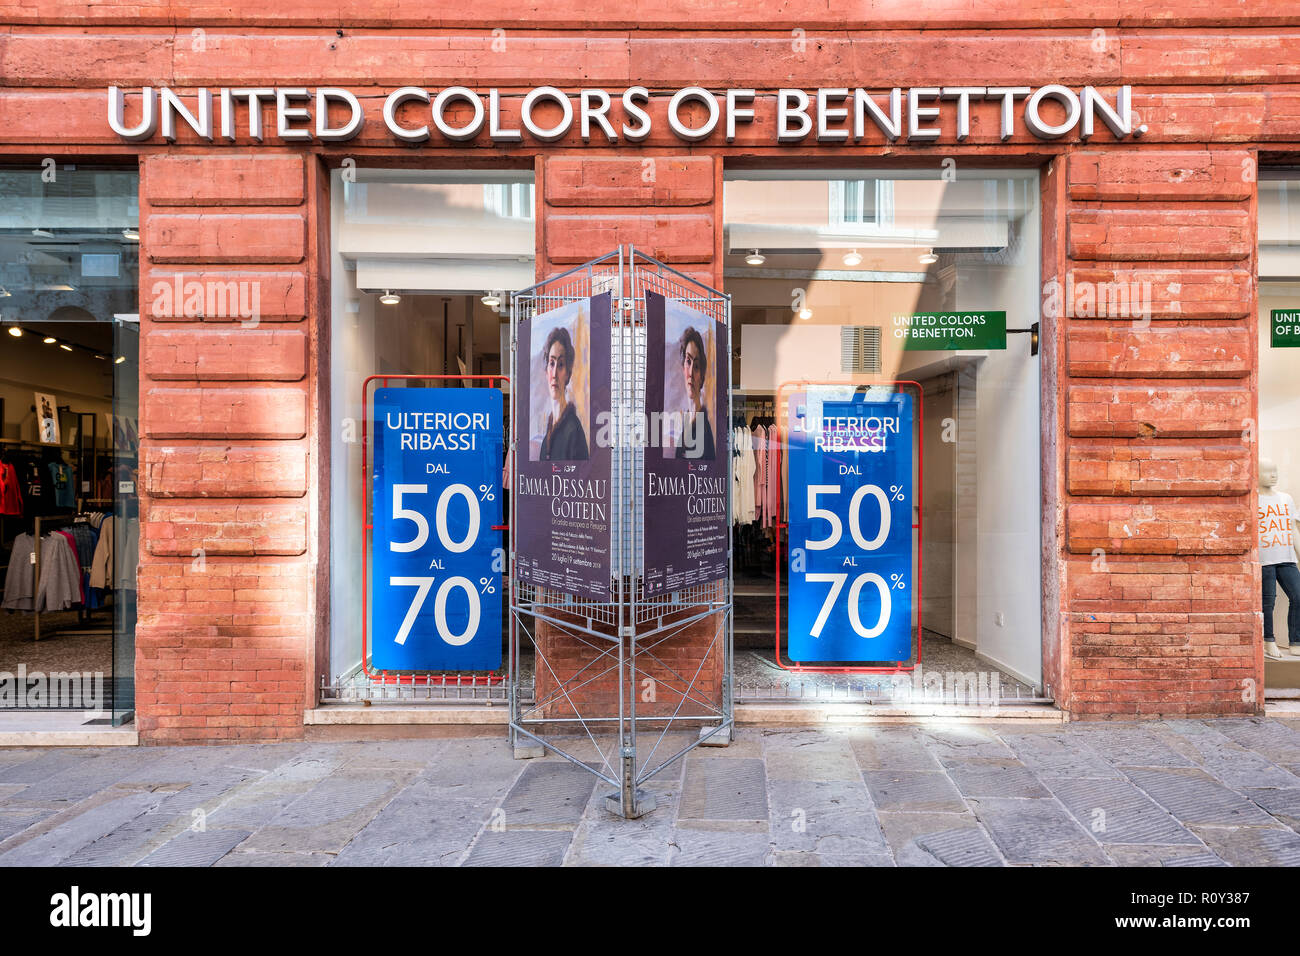 United colors of benetton immagini e fotografie stock ad alta risoluzione -  Alamy